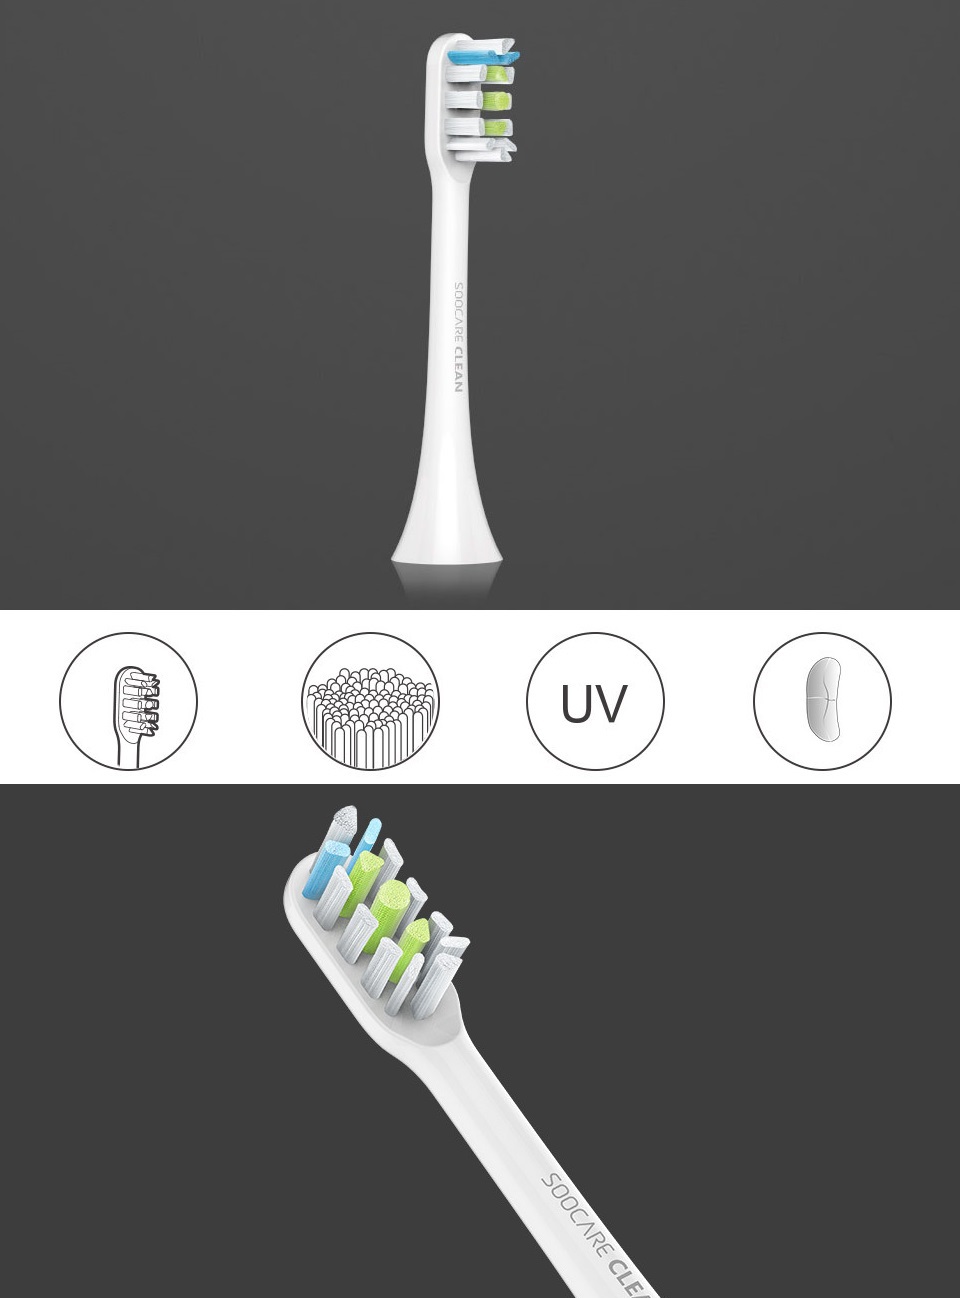 Насадка для зубной щетки Xiaomi Soocare X3 White фото насадки из разных ракурсов